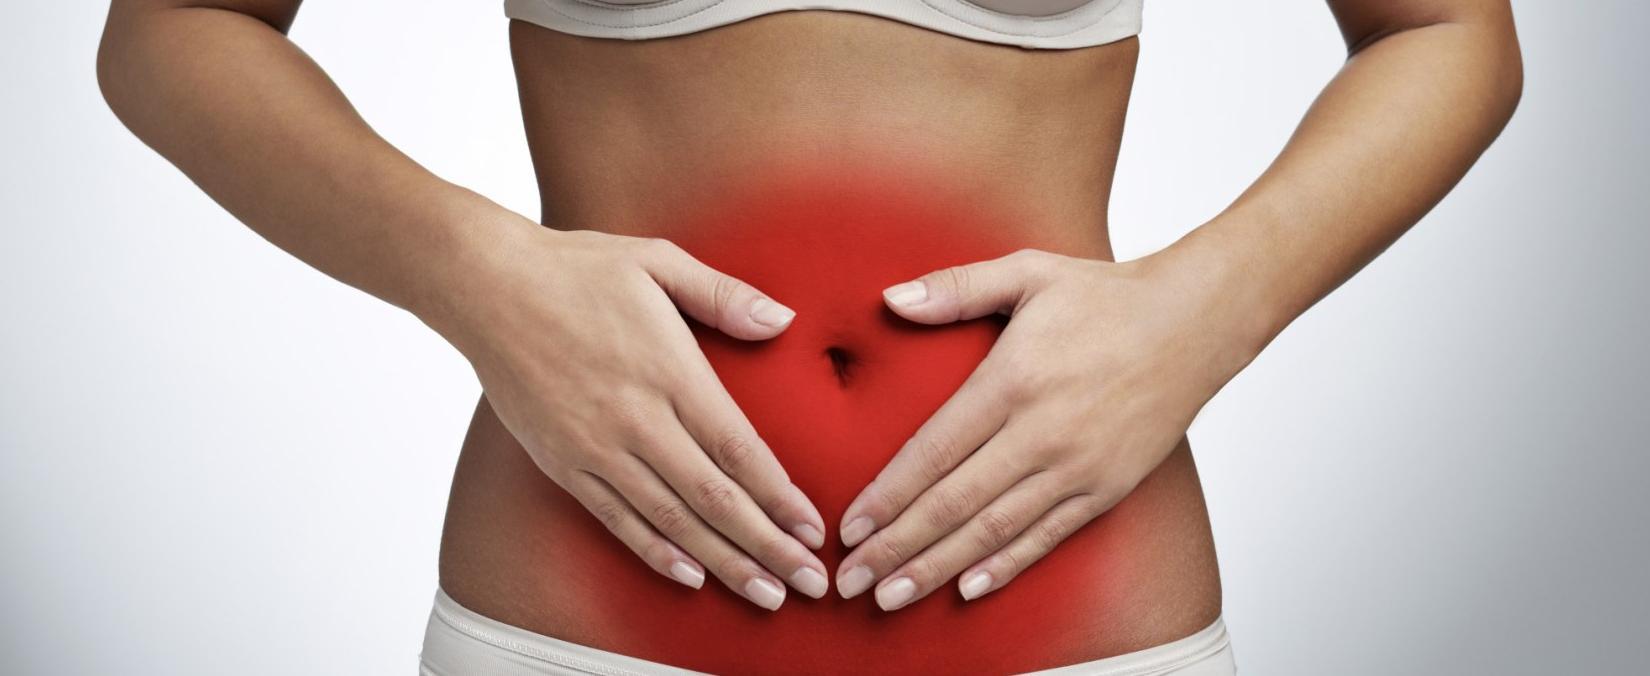 Σύνδρομο πολυκυστικών ωοθηκών: Οι 5 τρόποι που επηρεάζει το σωματικό βάρος